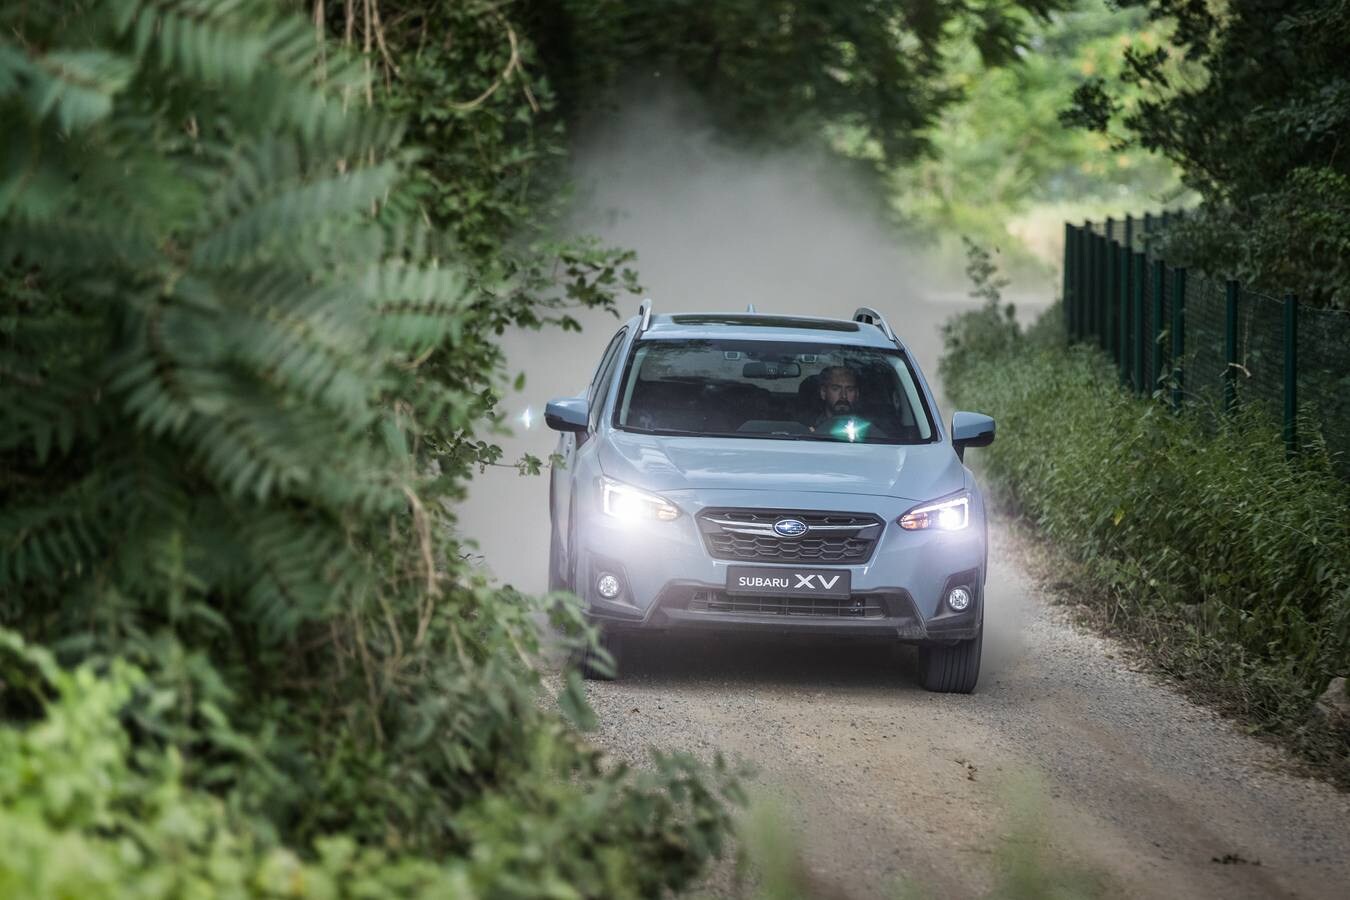 La segunda generación del Subaru XV empieza a venderse y las primeras unidades llegan a finales de año. Fiel a la tradición, equipa tracción a las cuatro ruedas, motor tipo bóxer y ahora solo se comercializa con cambio automático. La gama parte desde 21.900 euros que cuesta el 1.600.